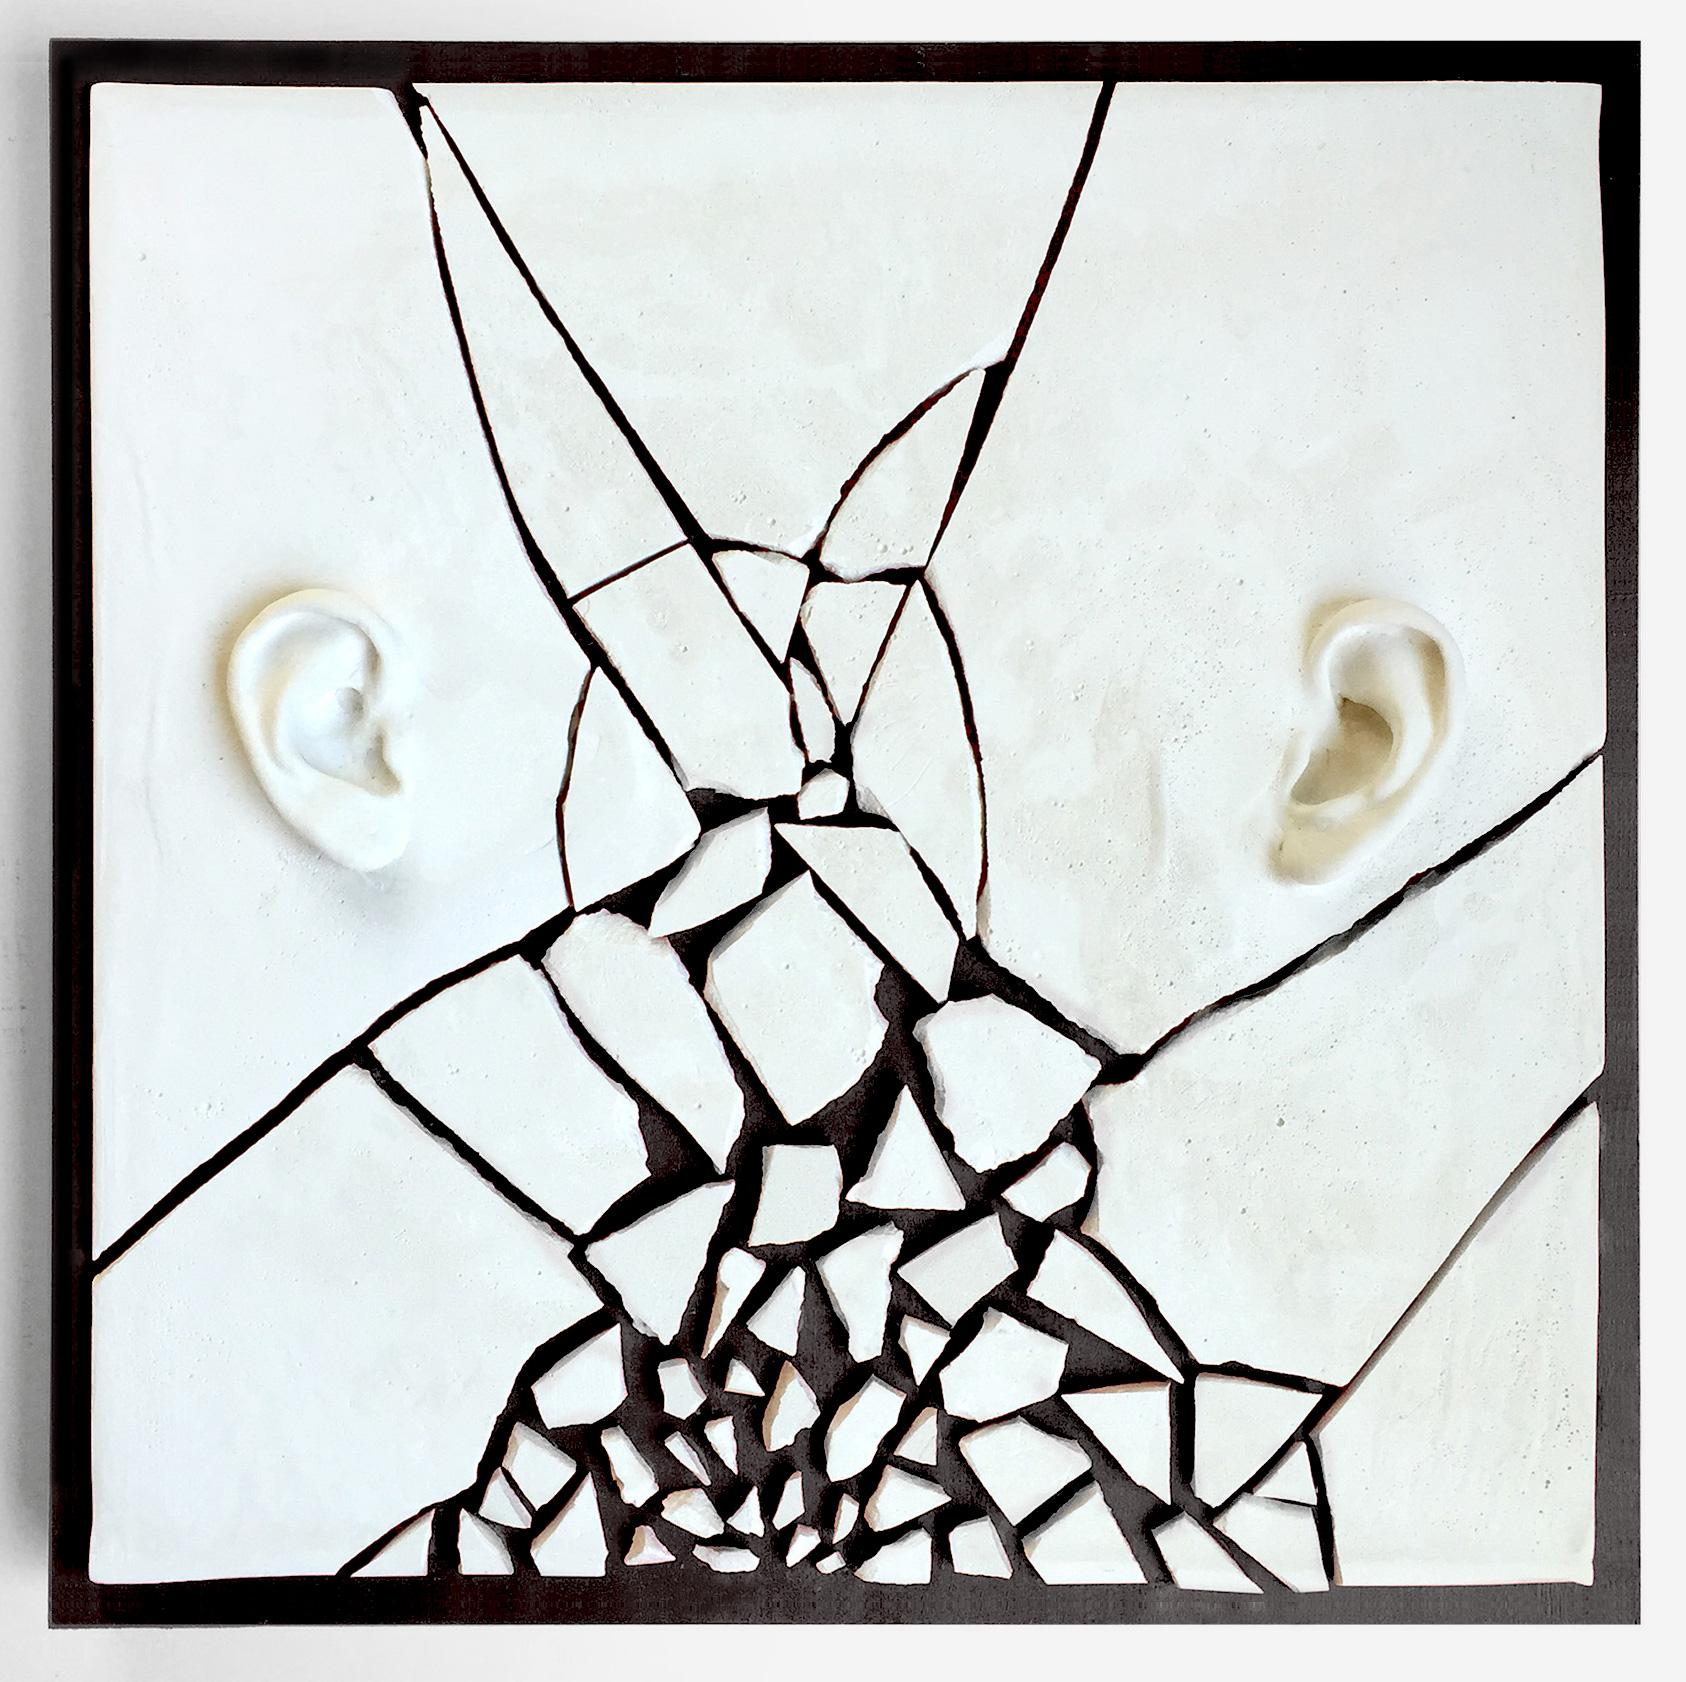 Fractured - Sculpture by Natalia Berglund